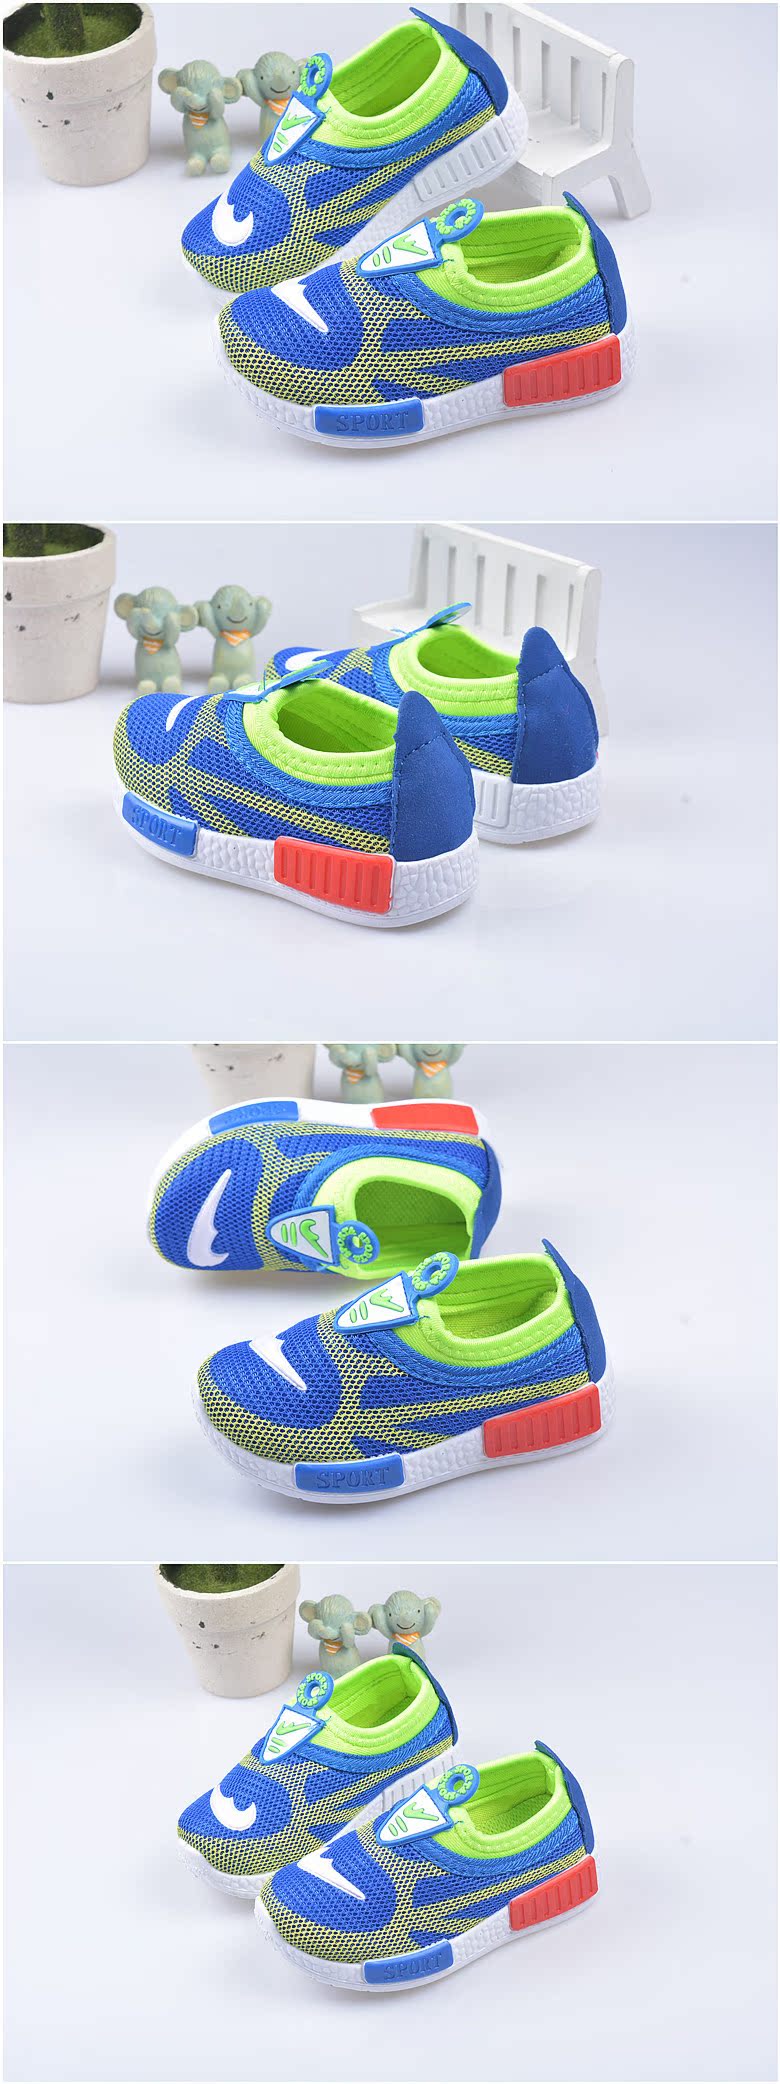 Chaussures enfants en tissu Z665 pour printemps - semelle caoutchouc - Ref 1040067 Image 9